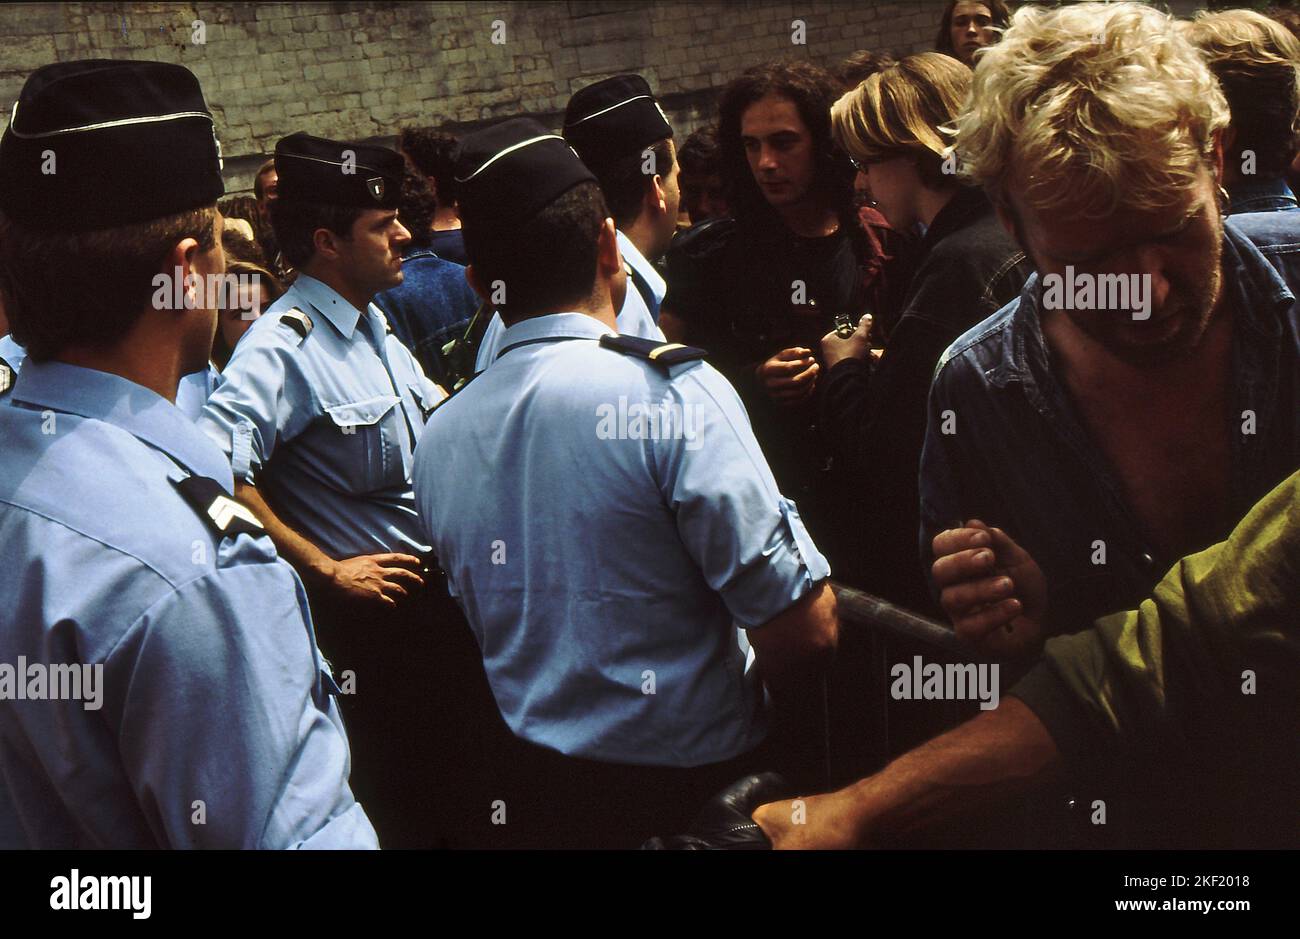 05-03-1991 Parigi,Francia,Cimitero di Pere Lachaise 20th° anniversario della morte di Jim Morrison. Centinaia di fan si sono riuniti fuori dal cimitero cercando di arrivare alla tomba di Jim Morrisson, ma sono stati fermati dalla polizia. Le porte erano chiuse e c'era uno scontro tra la folla e la polizia. Foto Stock